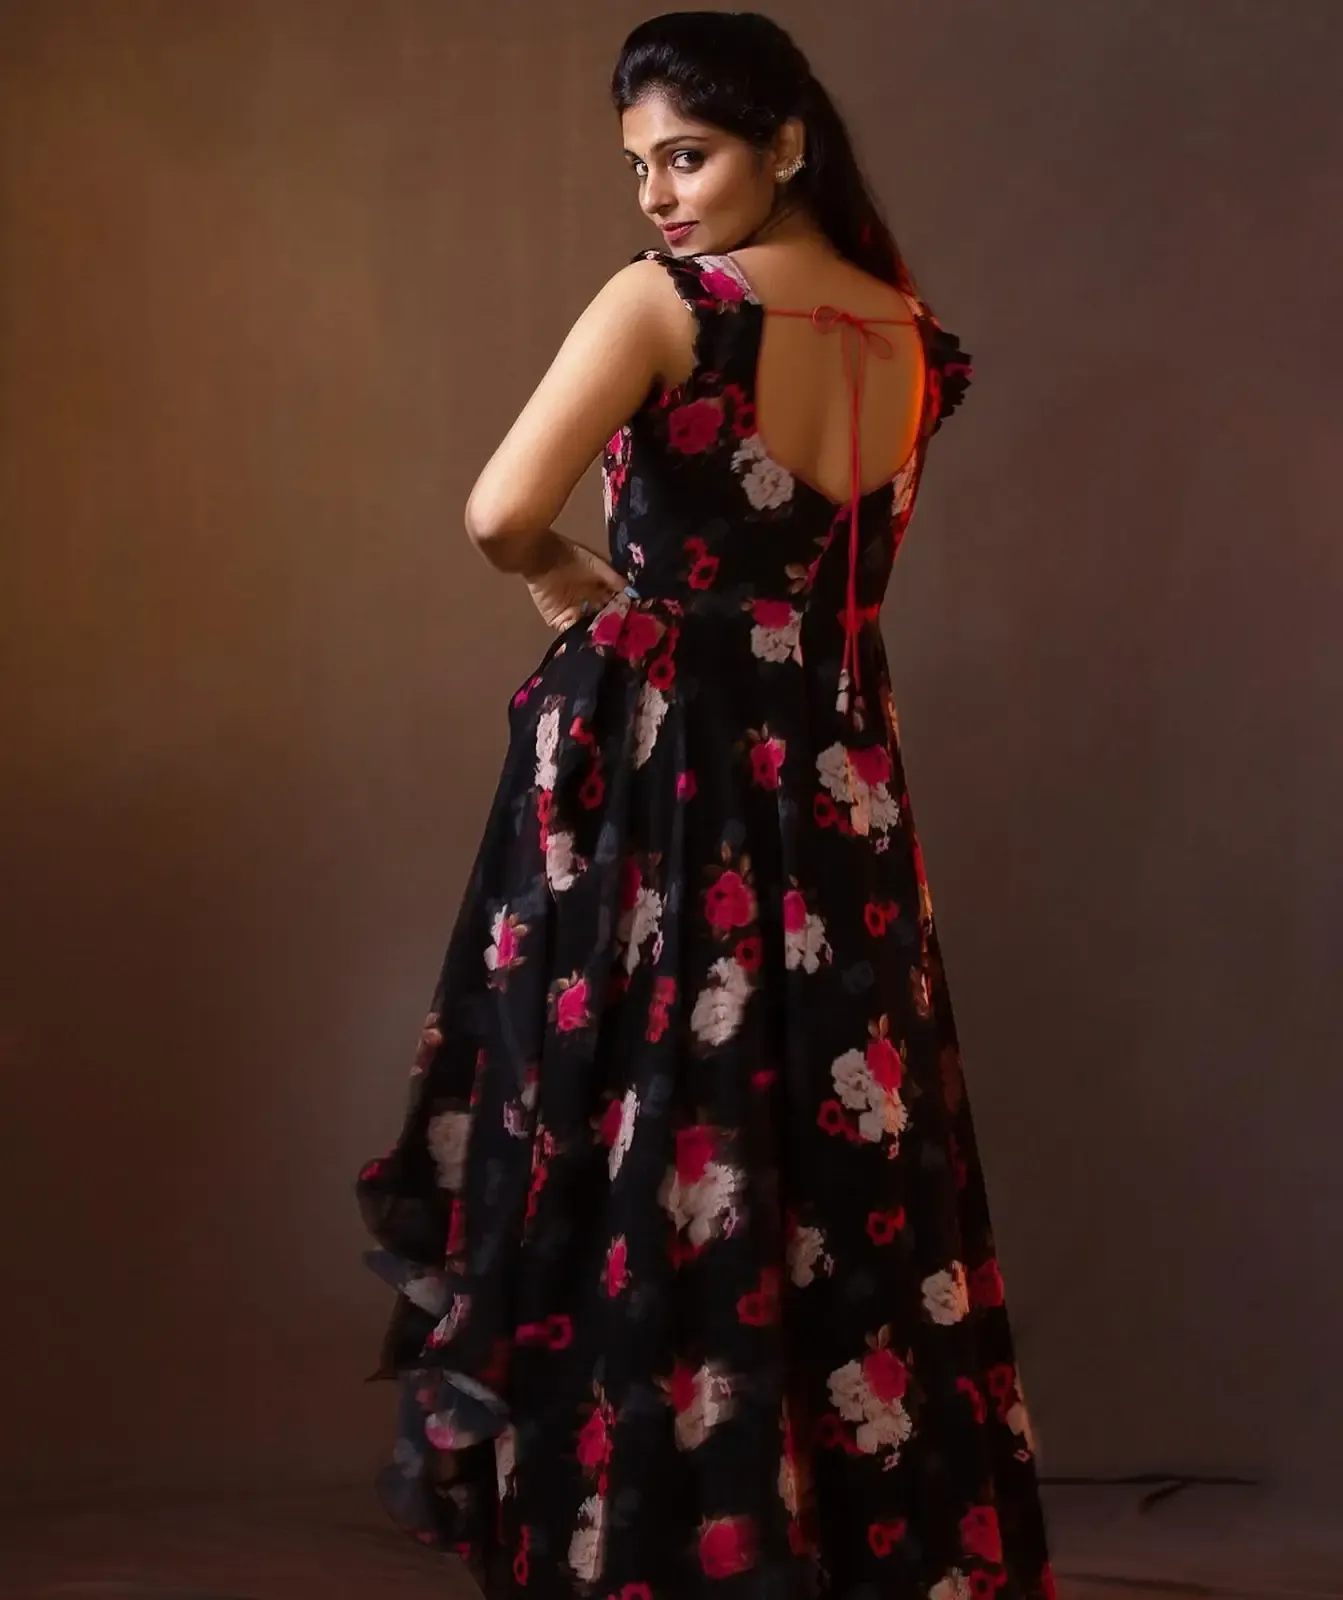 SOUTH INDIAN TV ACTRESS MOUNIKA REDDY IN BLACK DRESS